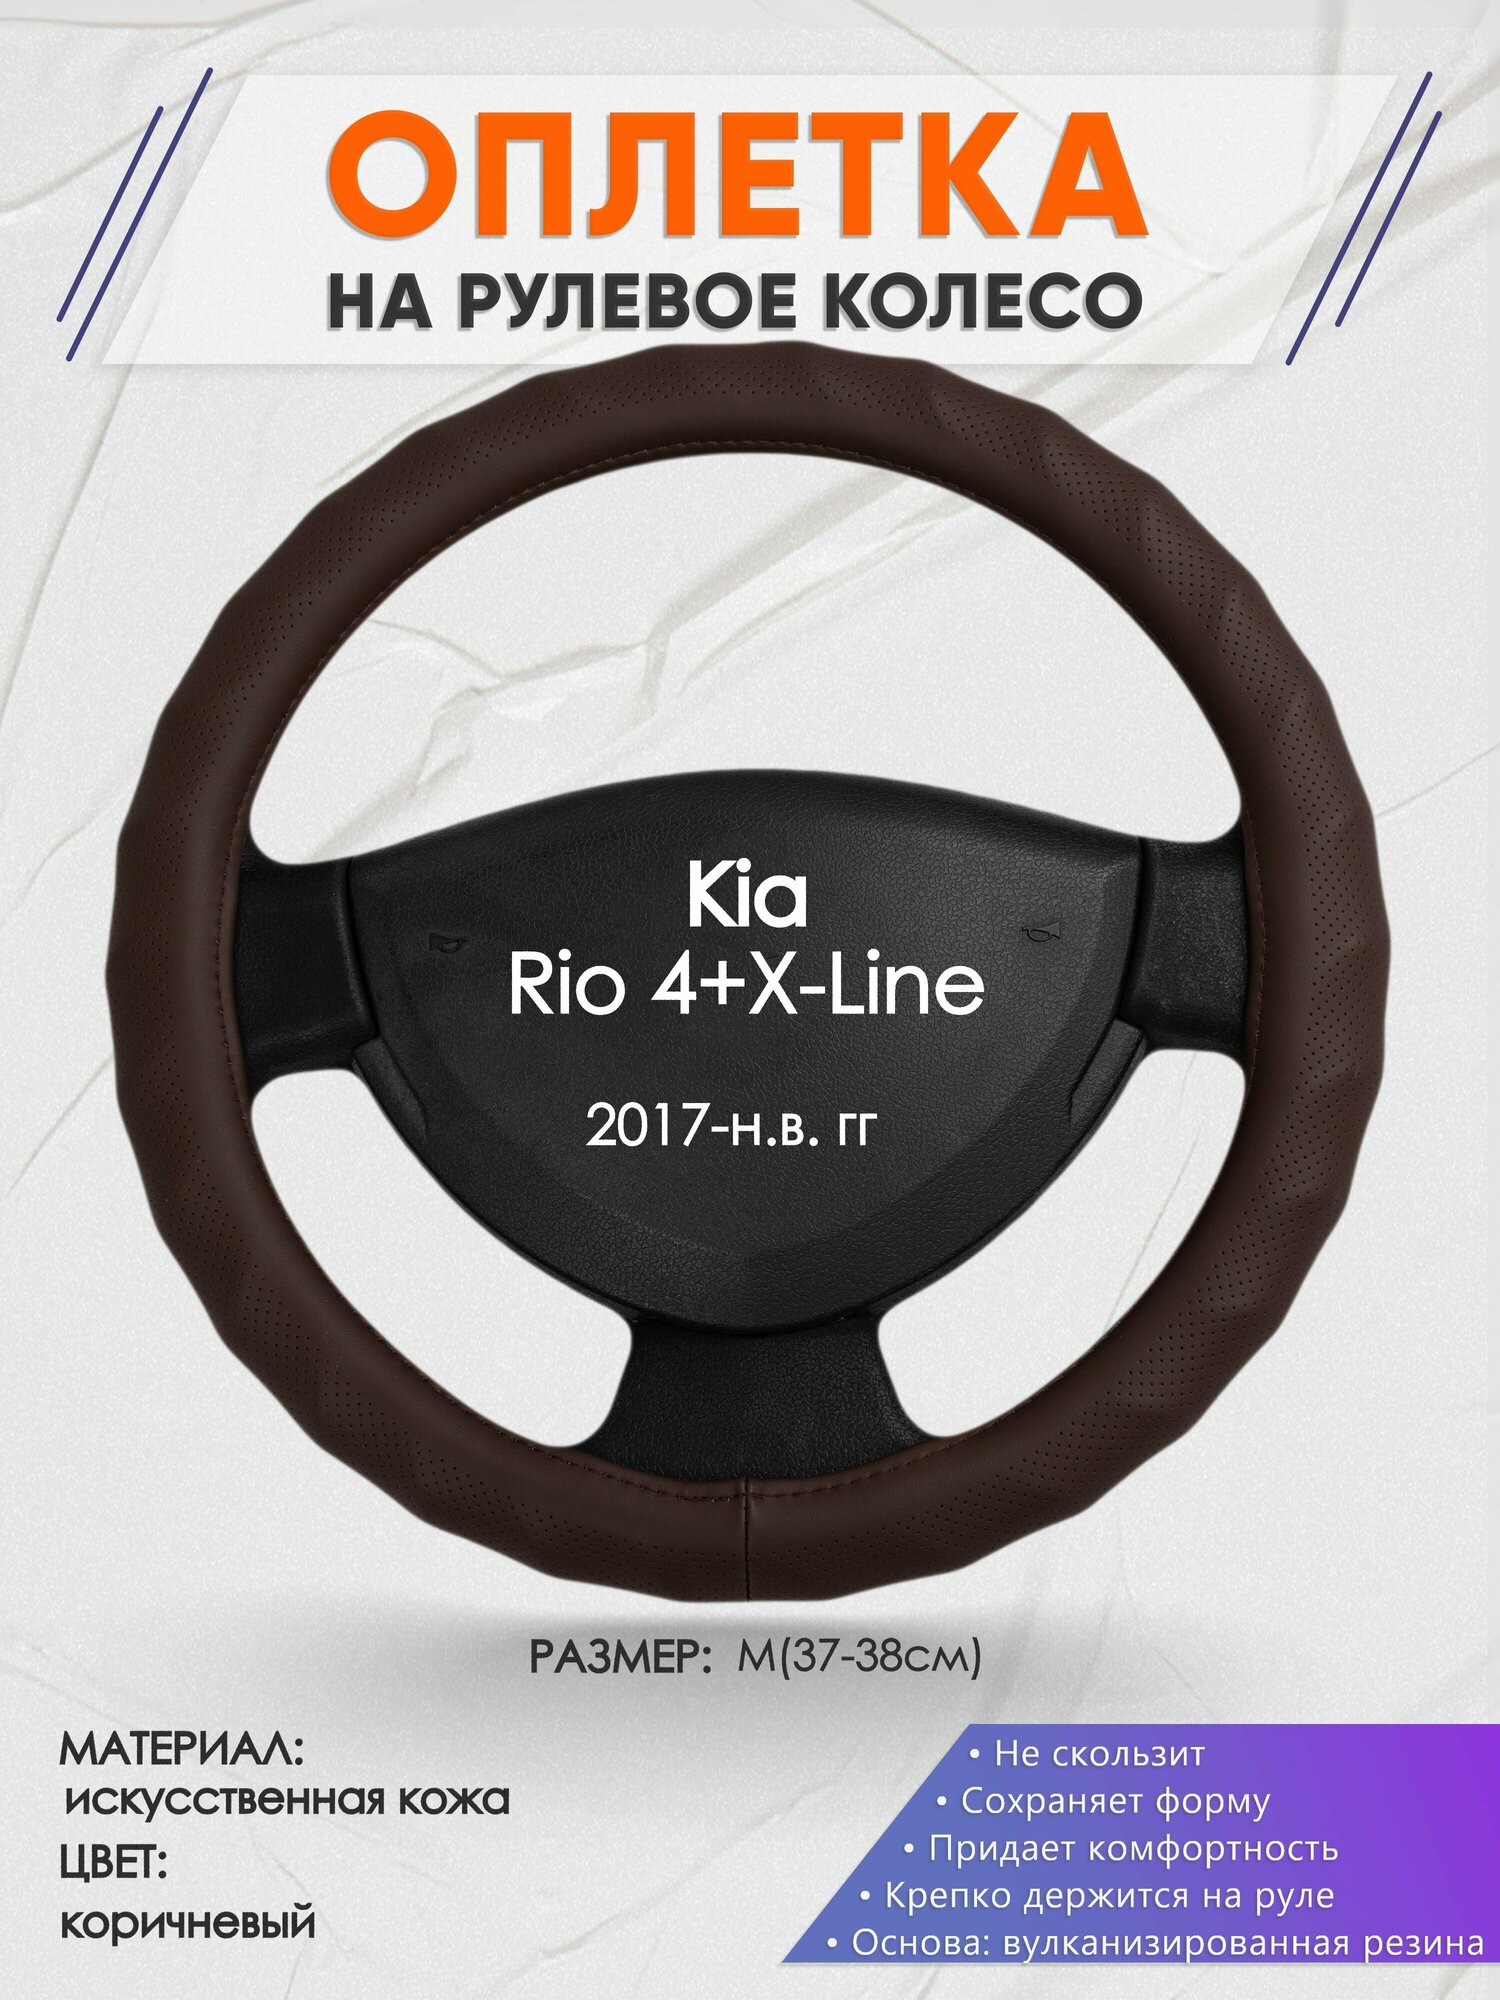 Оплетка на руль для Kia Rio 4+X-Line(Киа Рио 4 / Икс Лайн) 2017-н. в, M(37-38см), Искусственная кожа 10